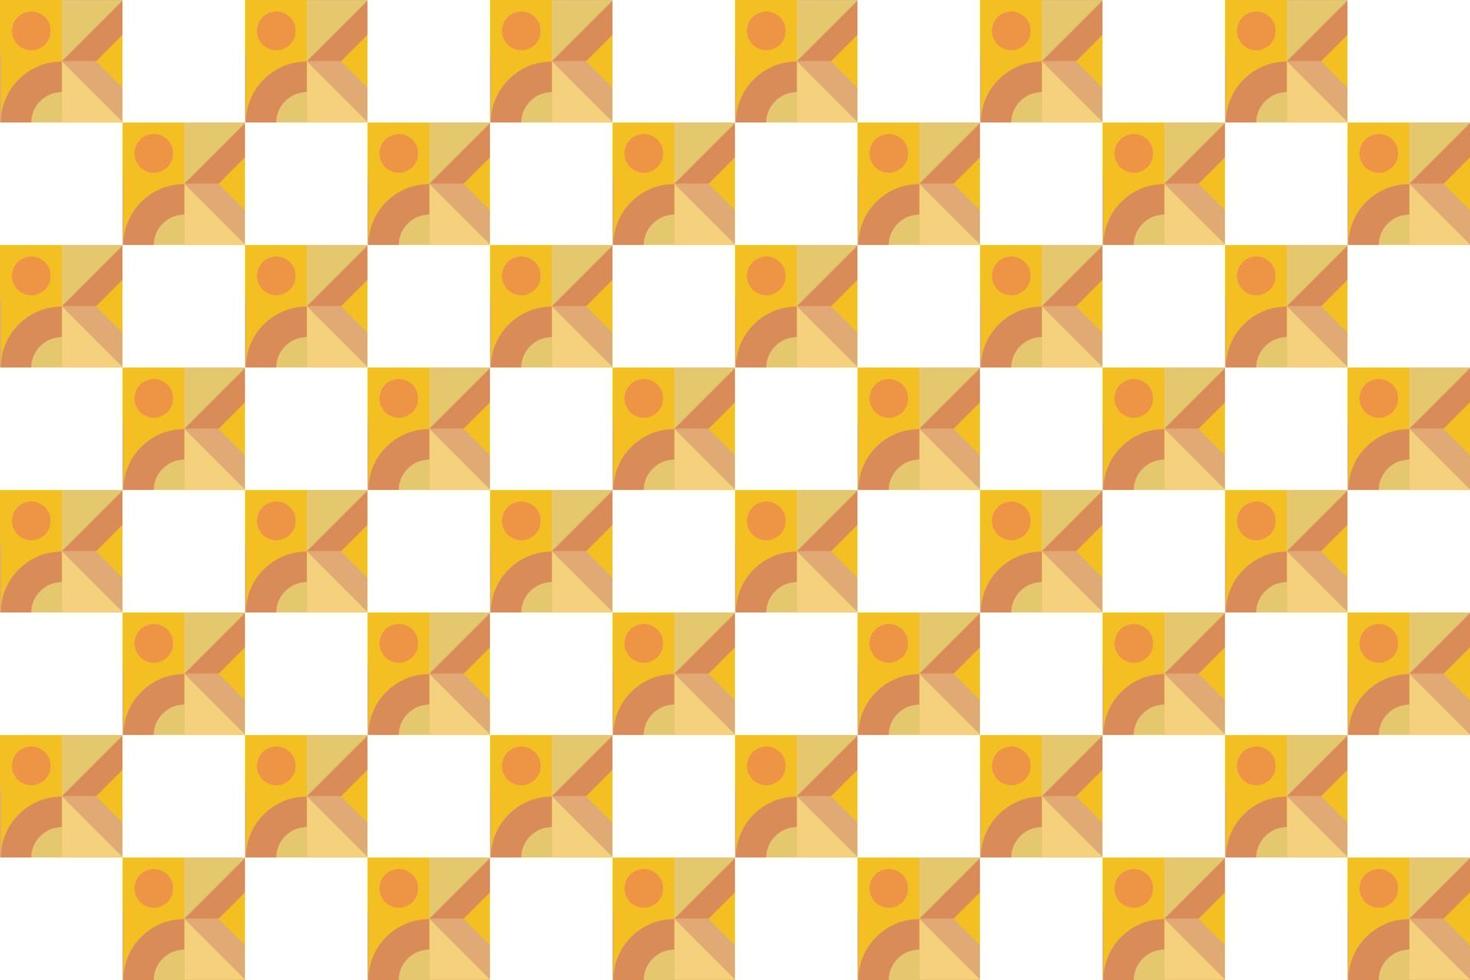 El elegante vector de patrón a cuadros es un patrón de rayas modificadas que consisten en líneas horizontales y verticales cruzadas que forman cuadrados.